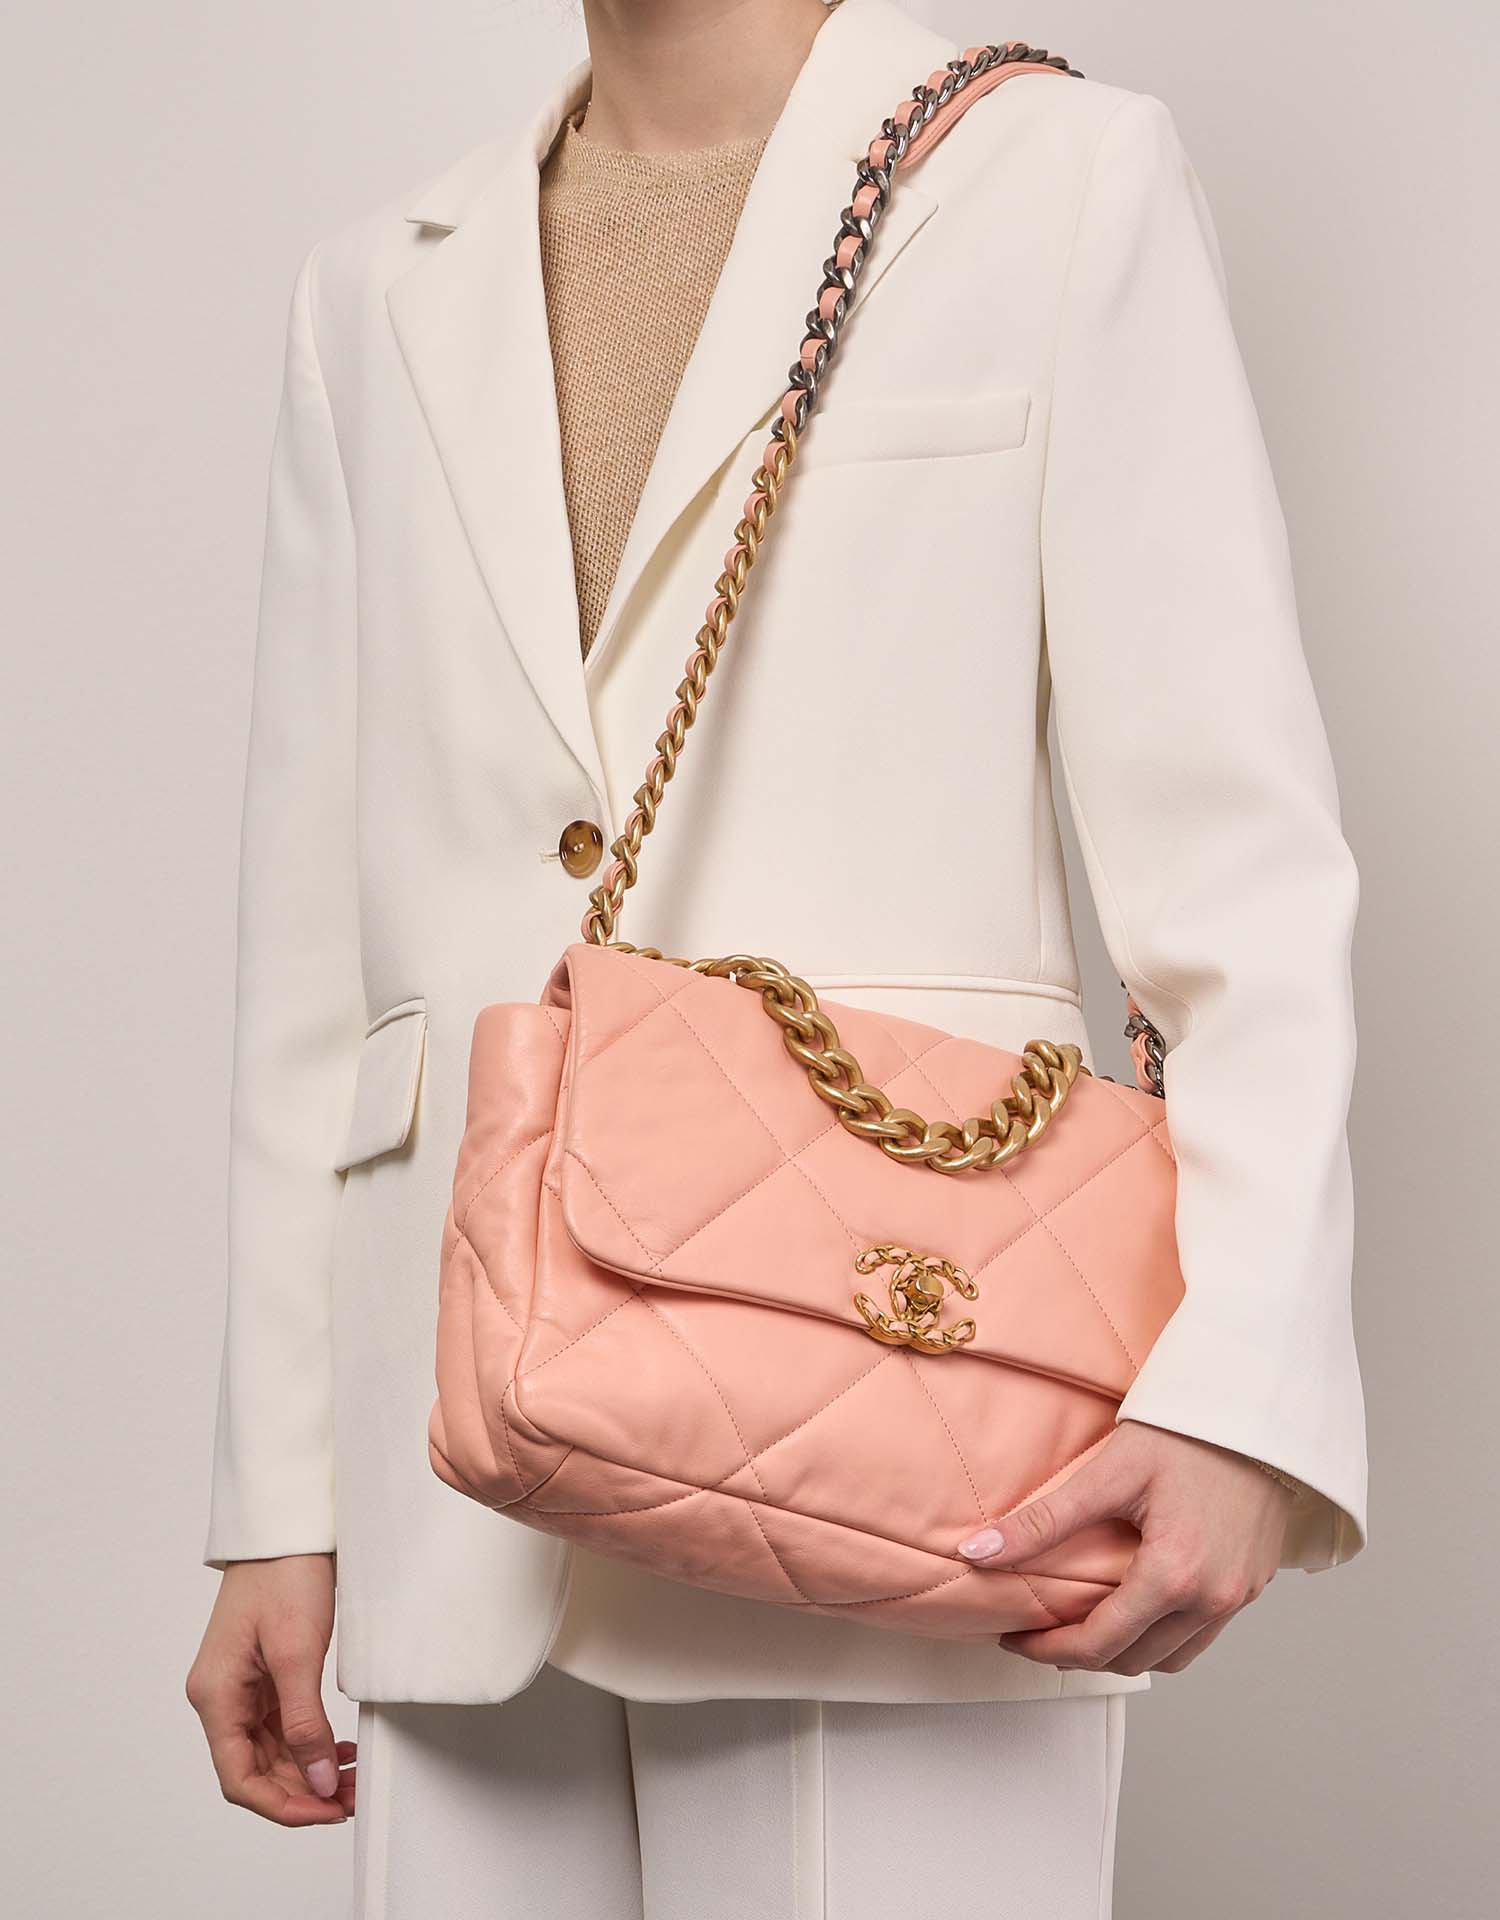 Chanel 19 LargeFlapBag Peach 1M | Verkaufen Sie Ihre Designer-Tasche auf Saclab.com